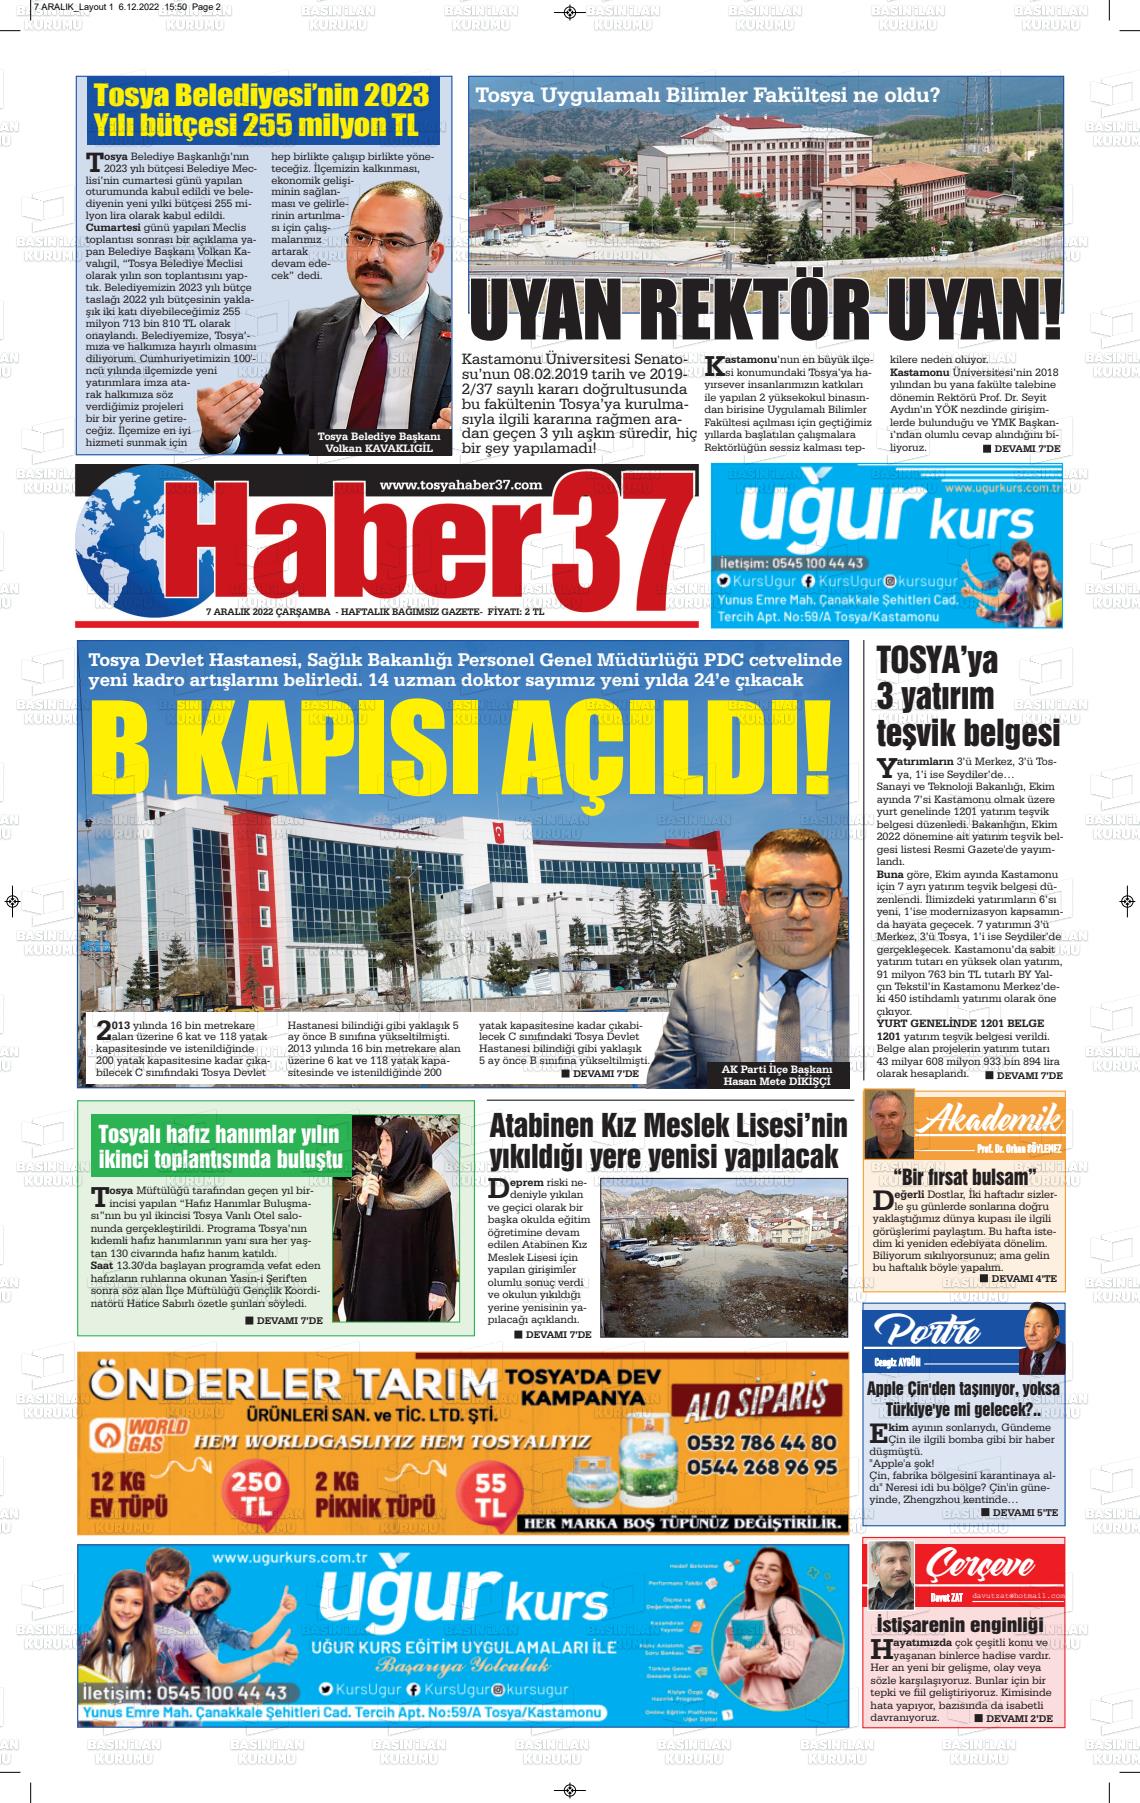 07 Aralık 2022 Haber37 Gazete Manşeti